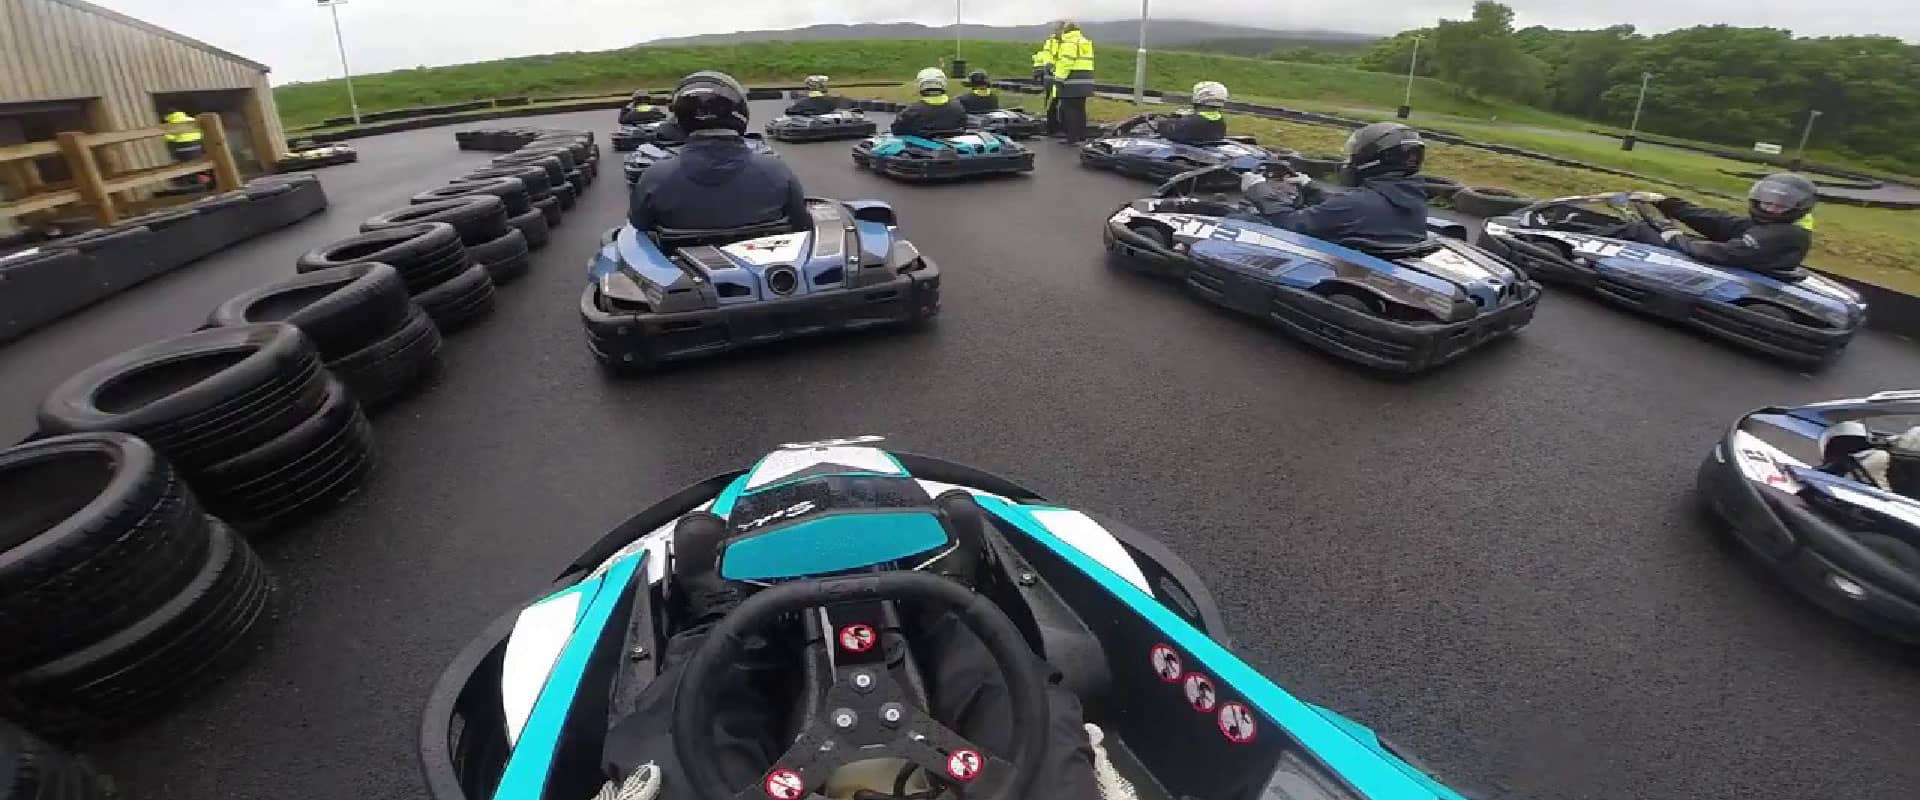 Aviemore Kart Raceway in UK